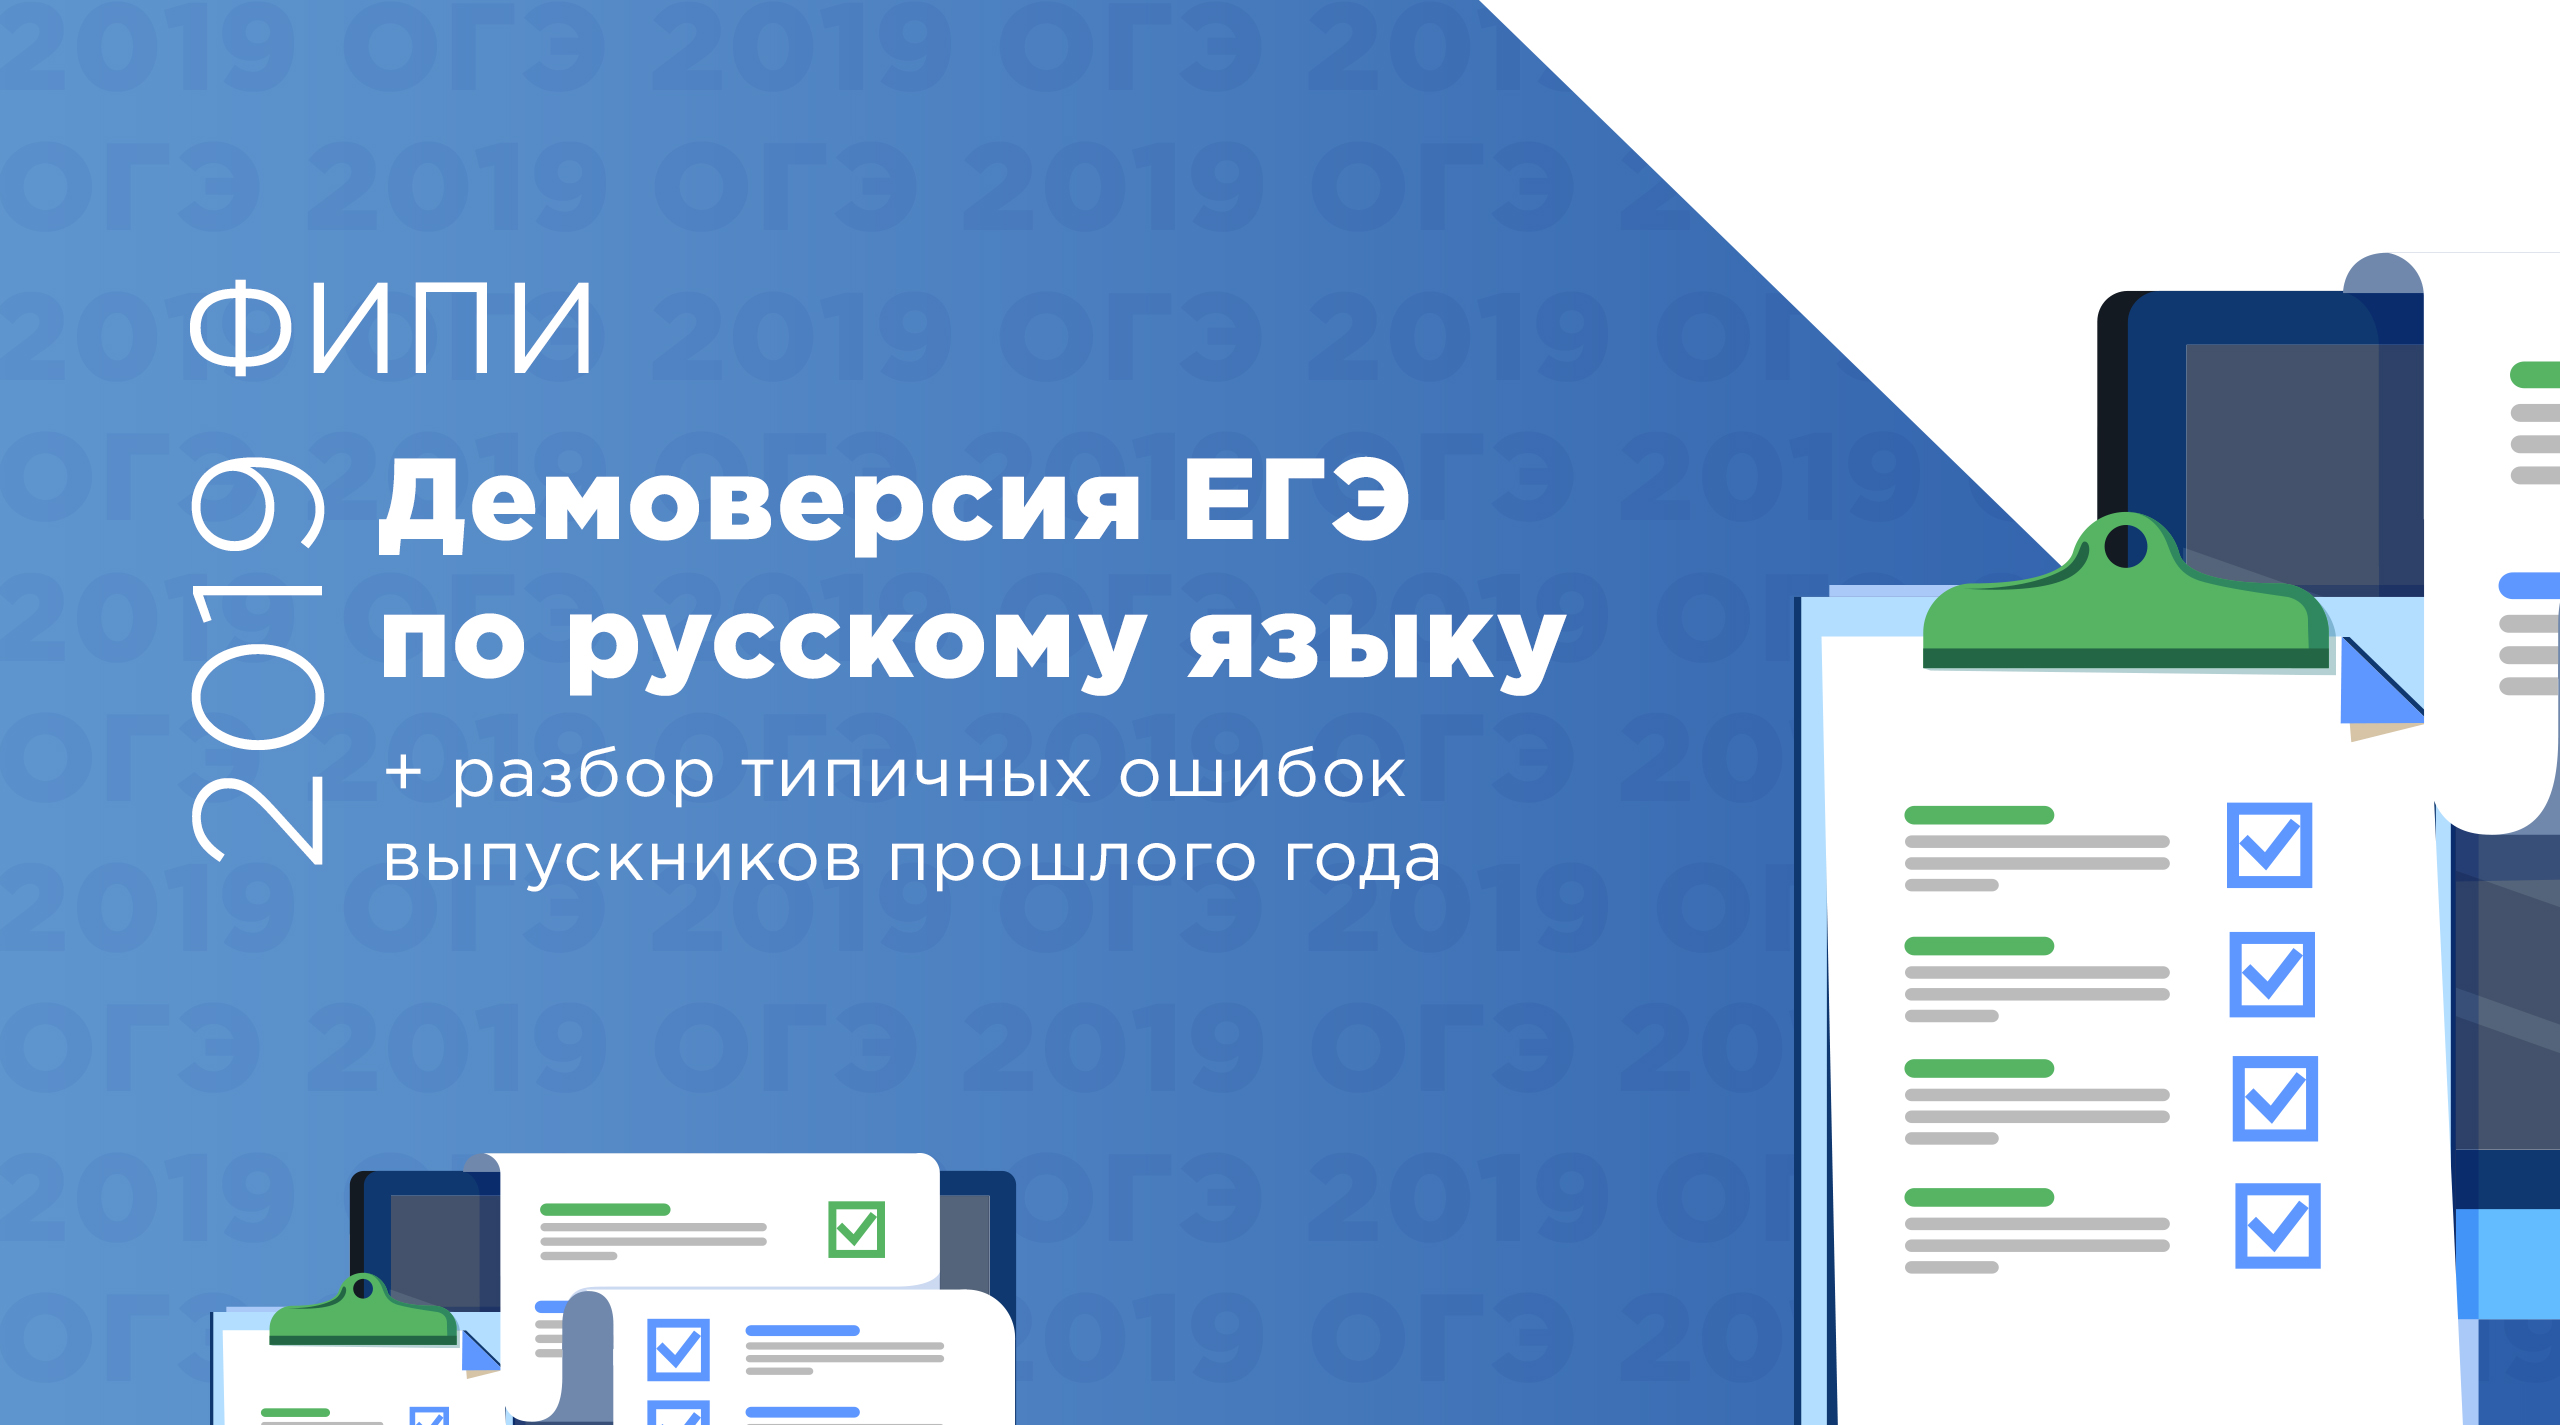 Демоверсия ЕГЭ по русскому языку 2019 года